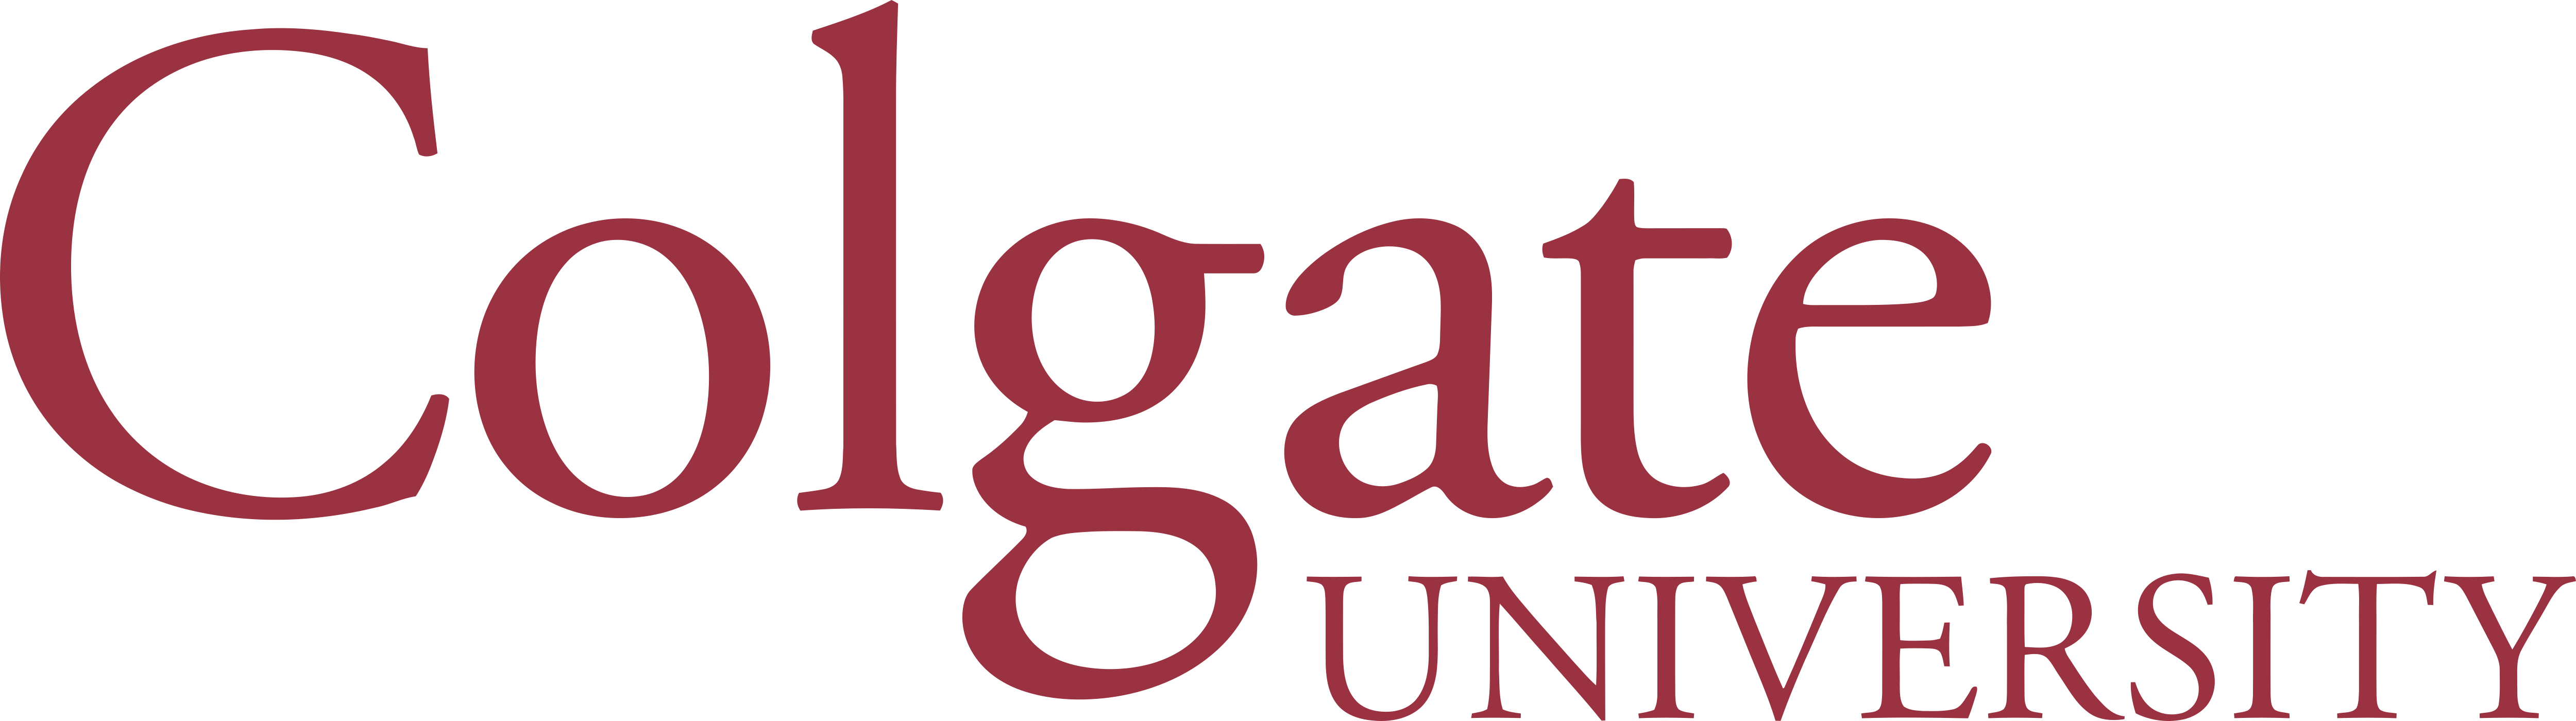 Colgate University – Logos Download